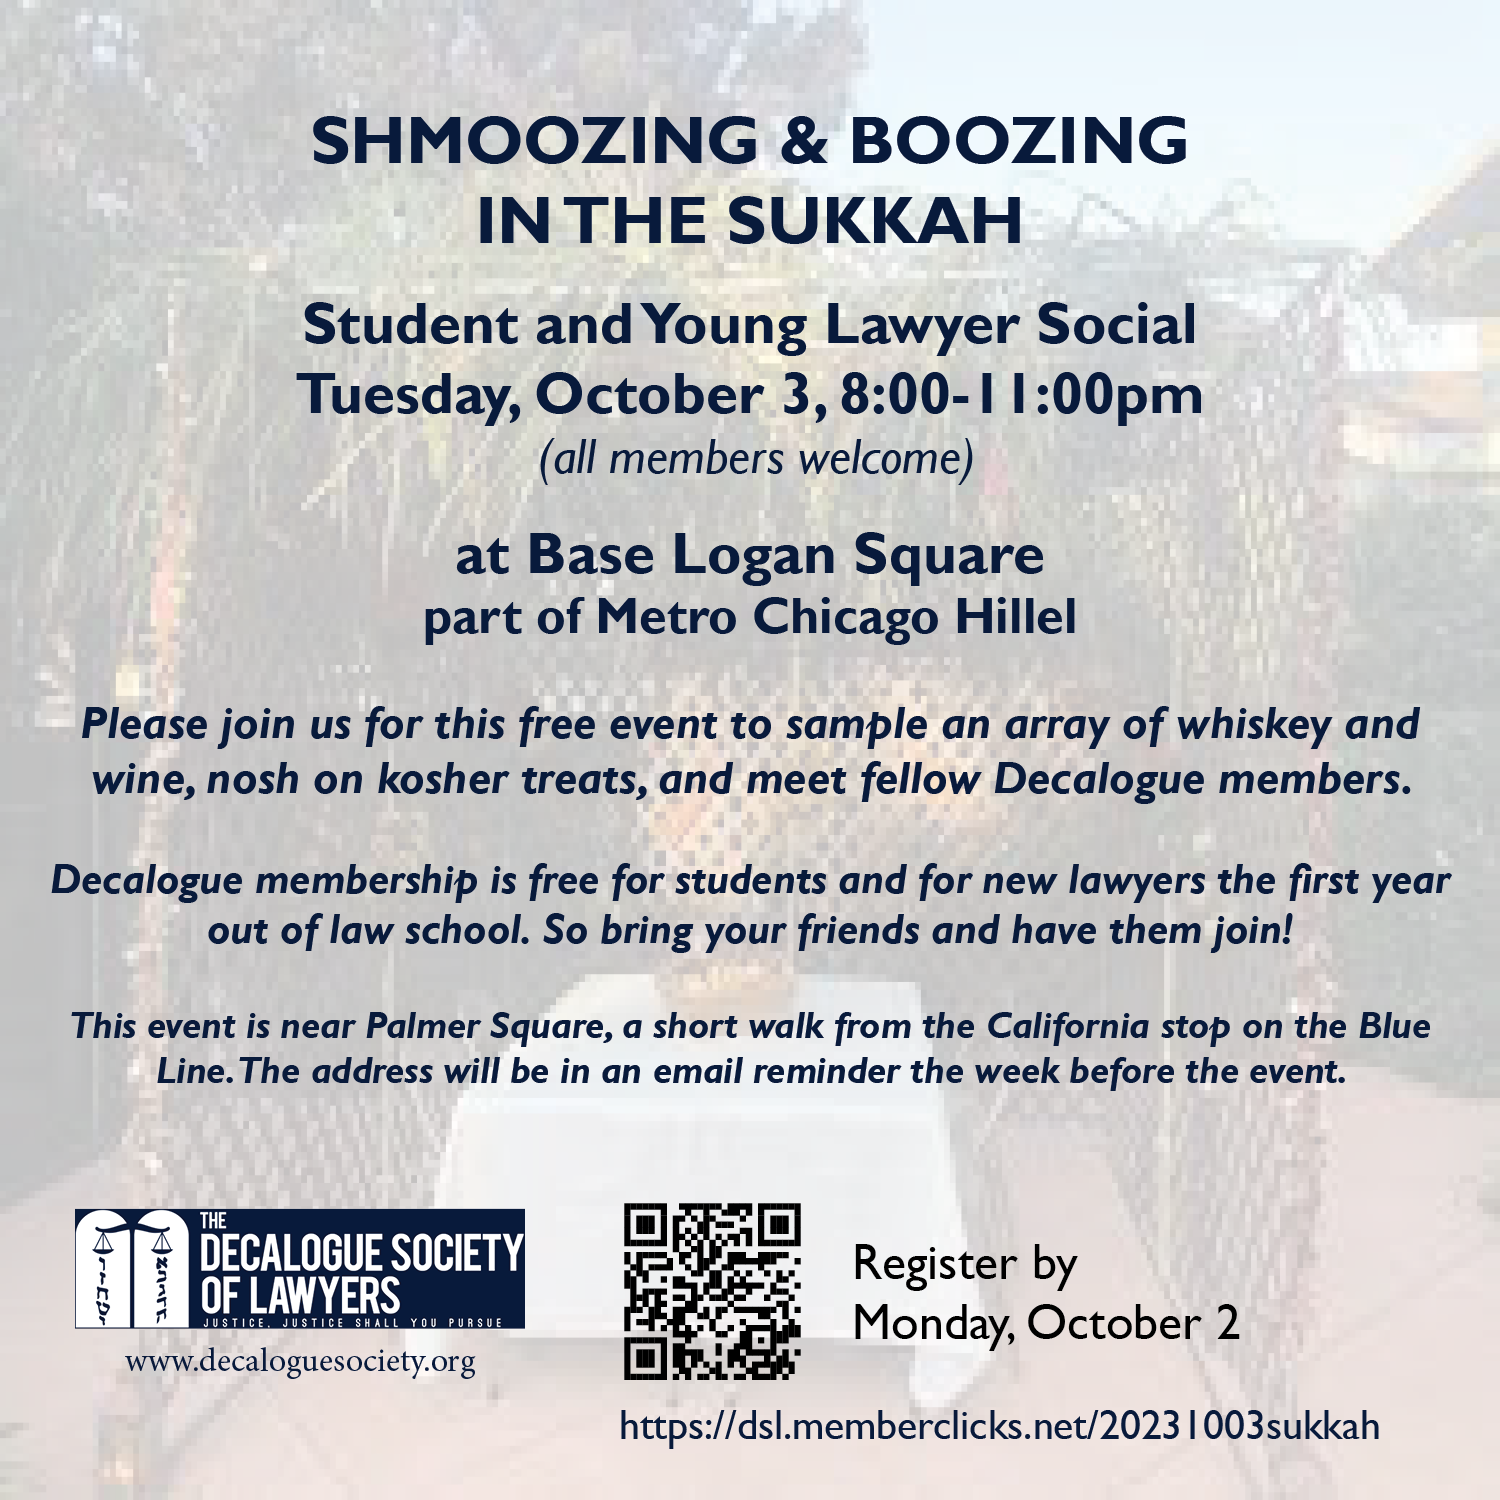 Shmoozing ^ Boozing in the Sukkah